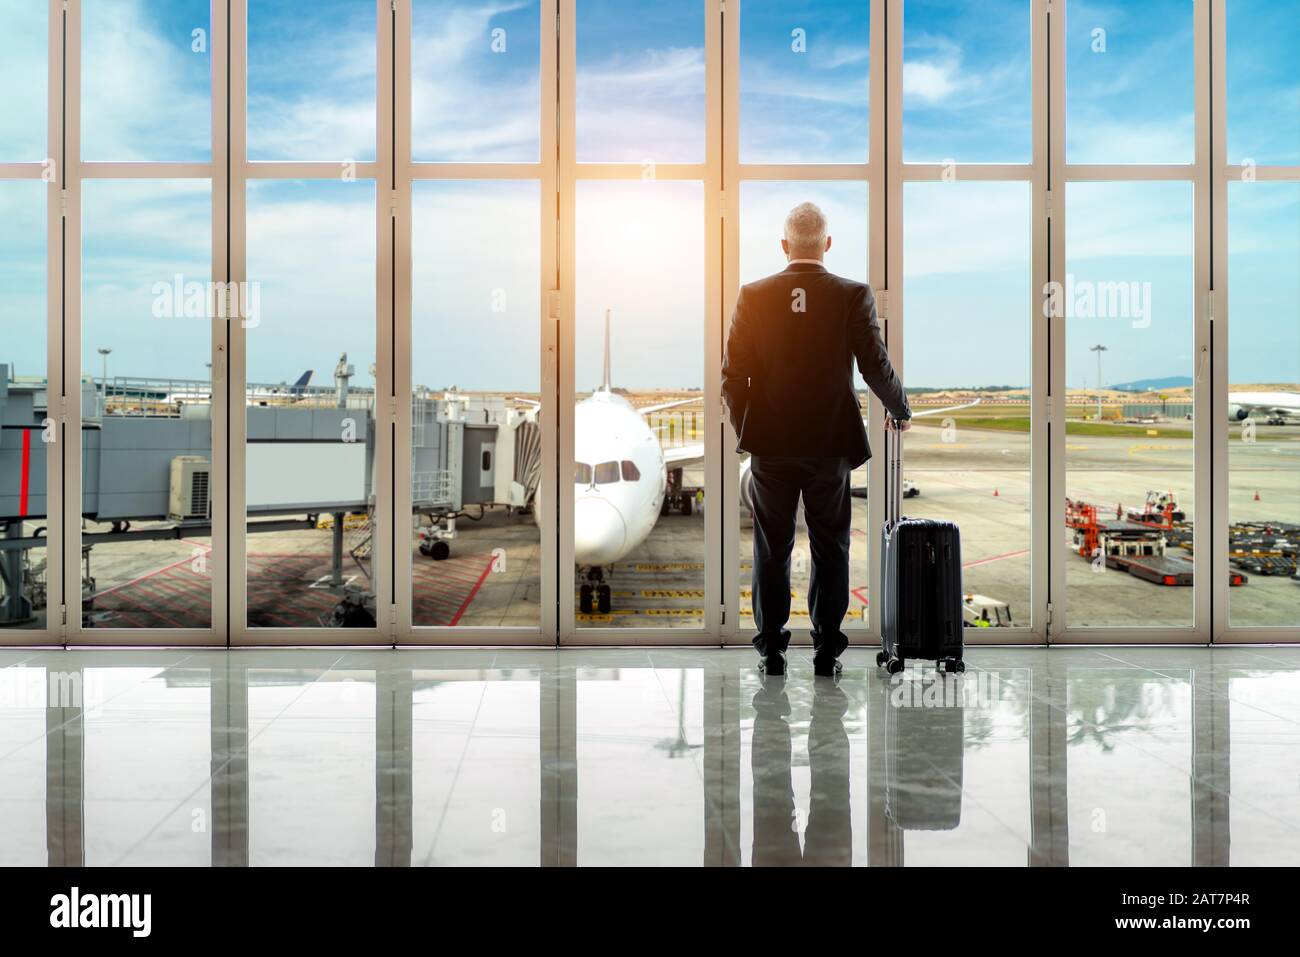 Geschäftsmann steht zusammen mit Gepäck in der Nähe des Fensters am Abflugplatz am Terminal des internationalen Flughafens. Businessstravel Konzept. Stockfoto